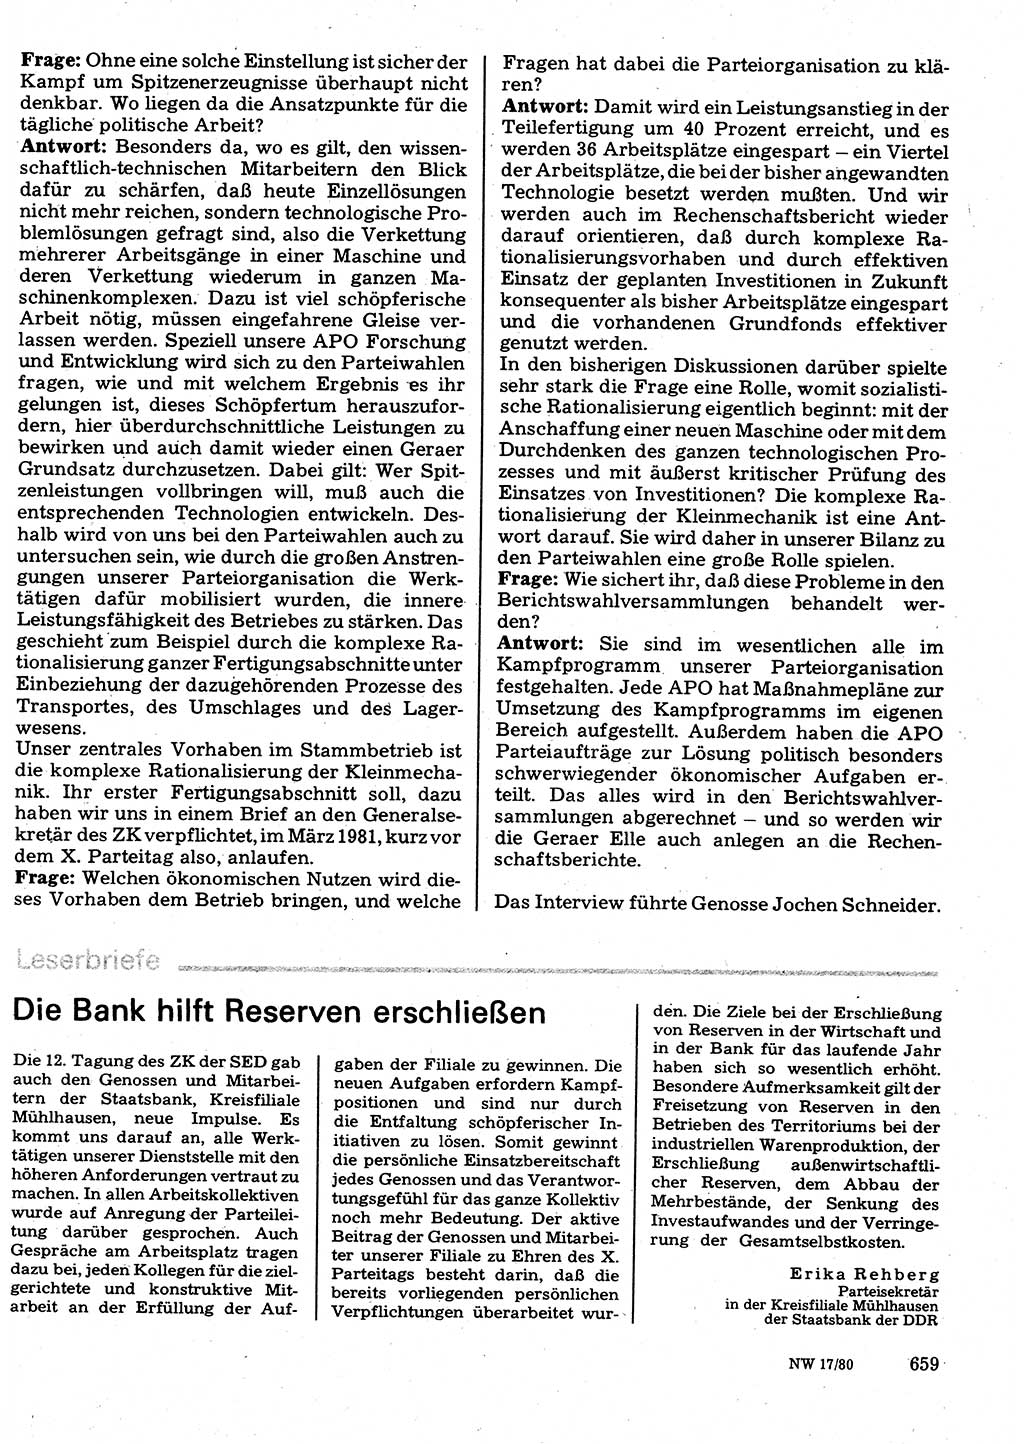 Neuer Weg (NW), Organ des Zentralkomitees (ZK) der SED (Sozialistische Einheitspartei Deutschlands) für Fragen des Parteilebens, 35. Jahrgang [Deutsche Demokratische Republik (DDR)] 1980, Seite 659 (NW ZK SED DDR 1980, S. 659)